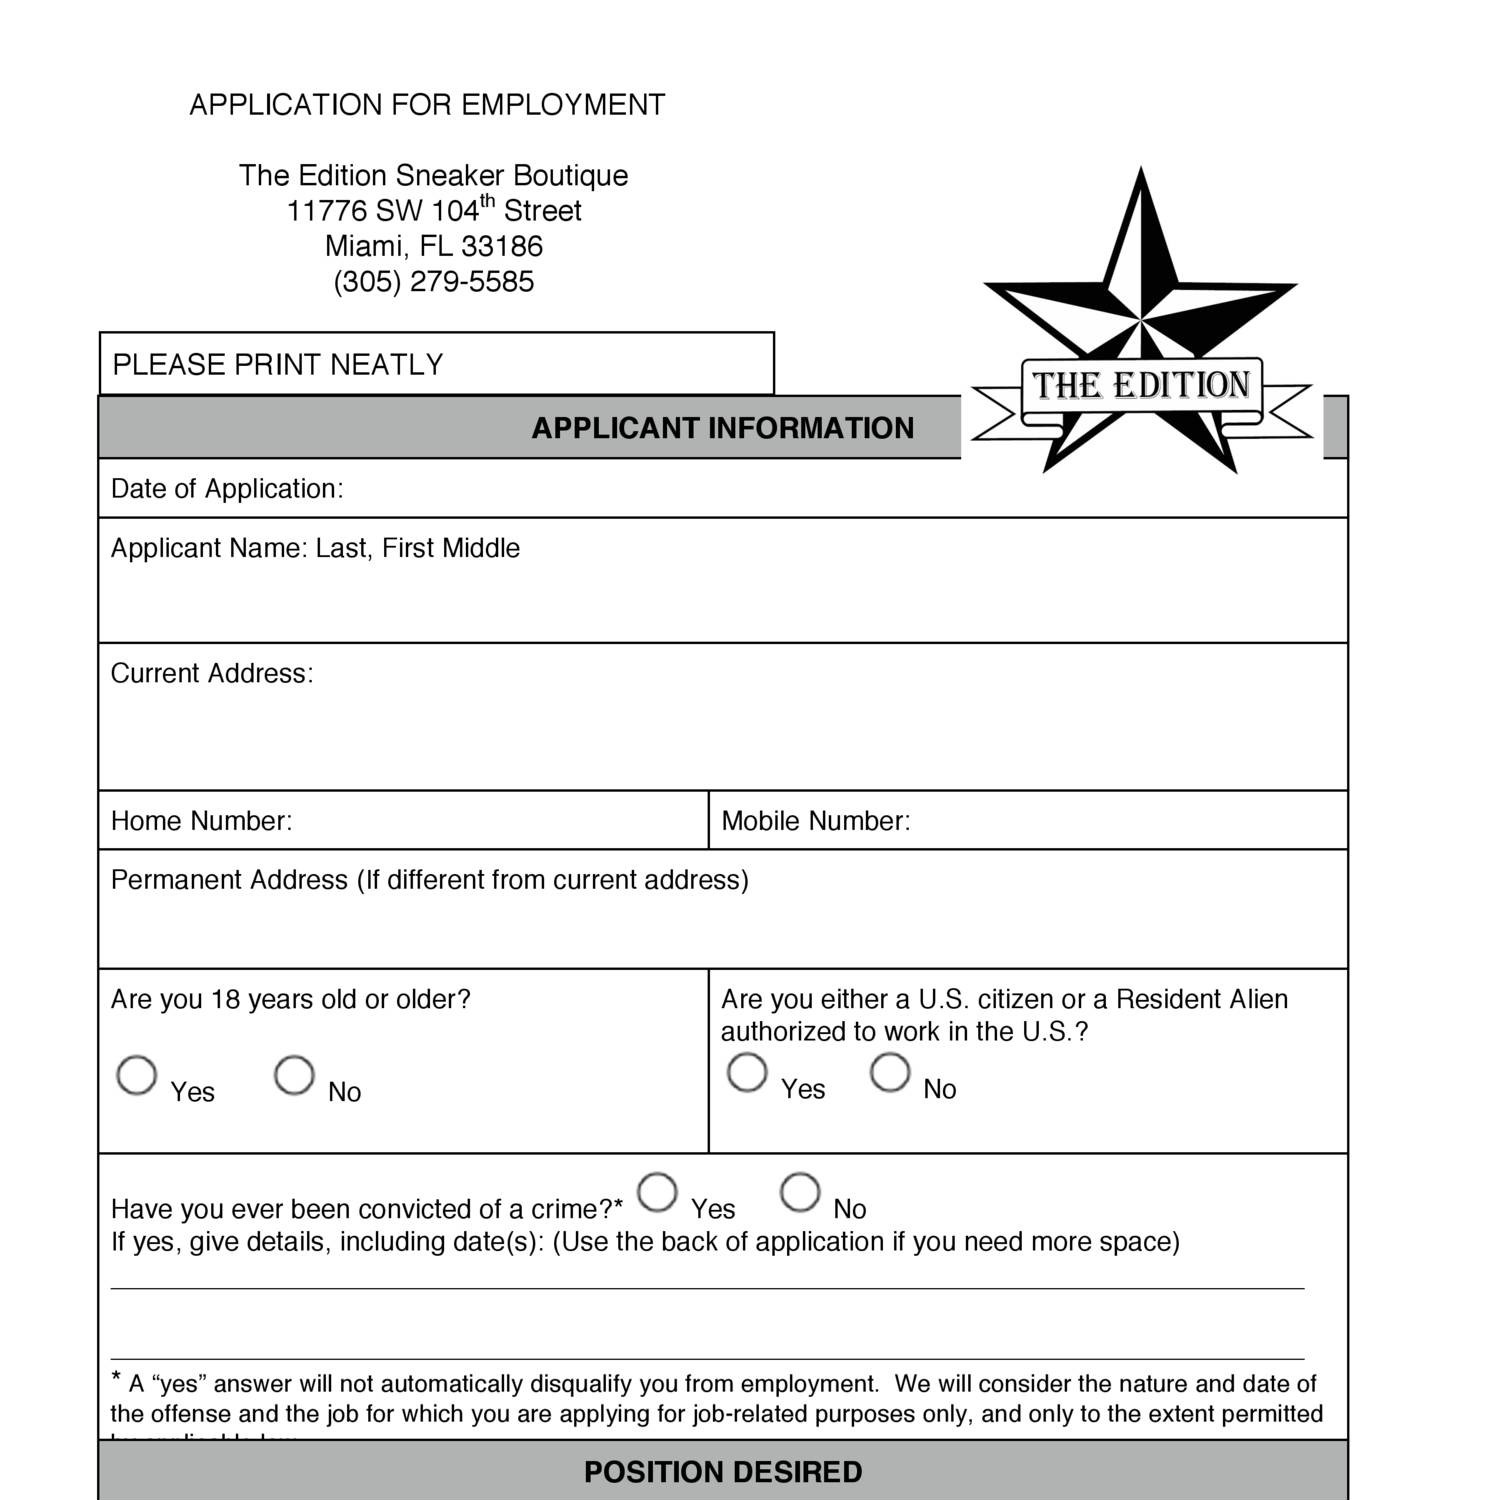 Shoe station job application online